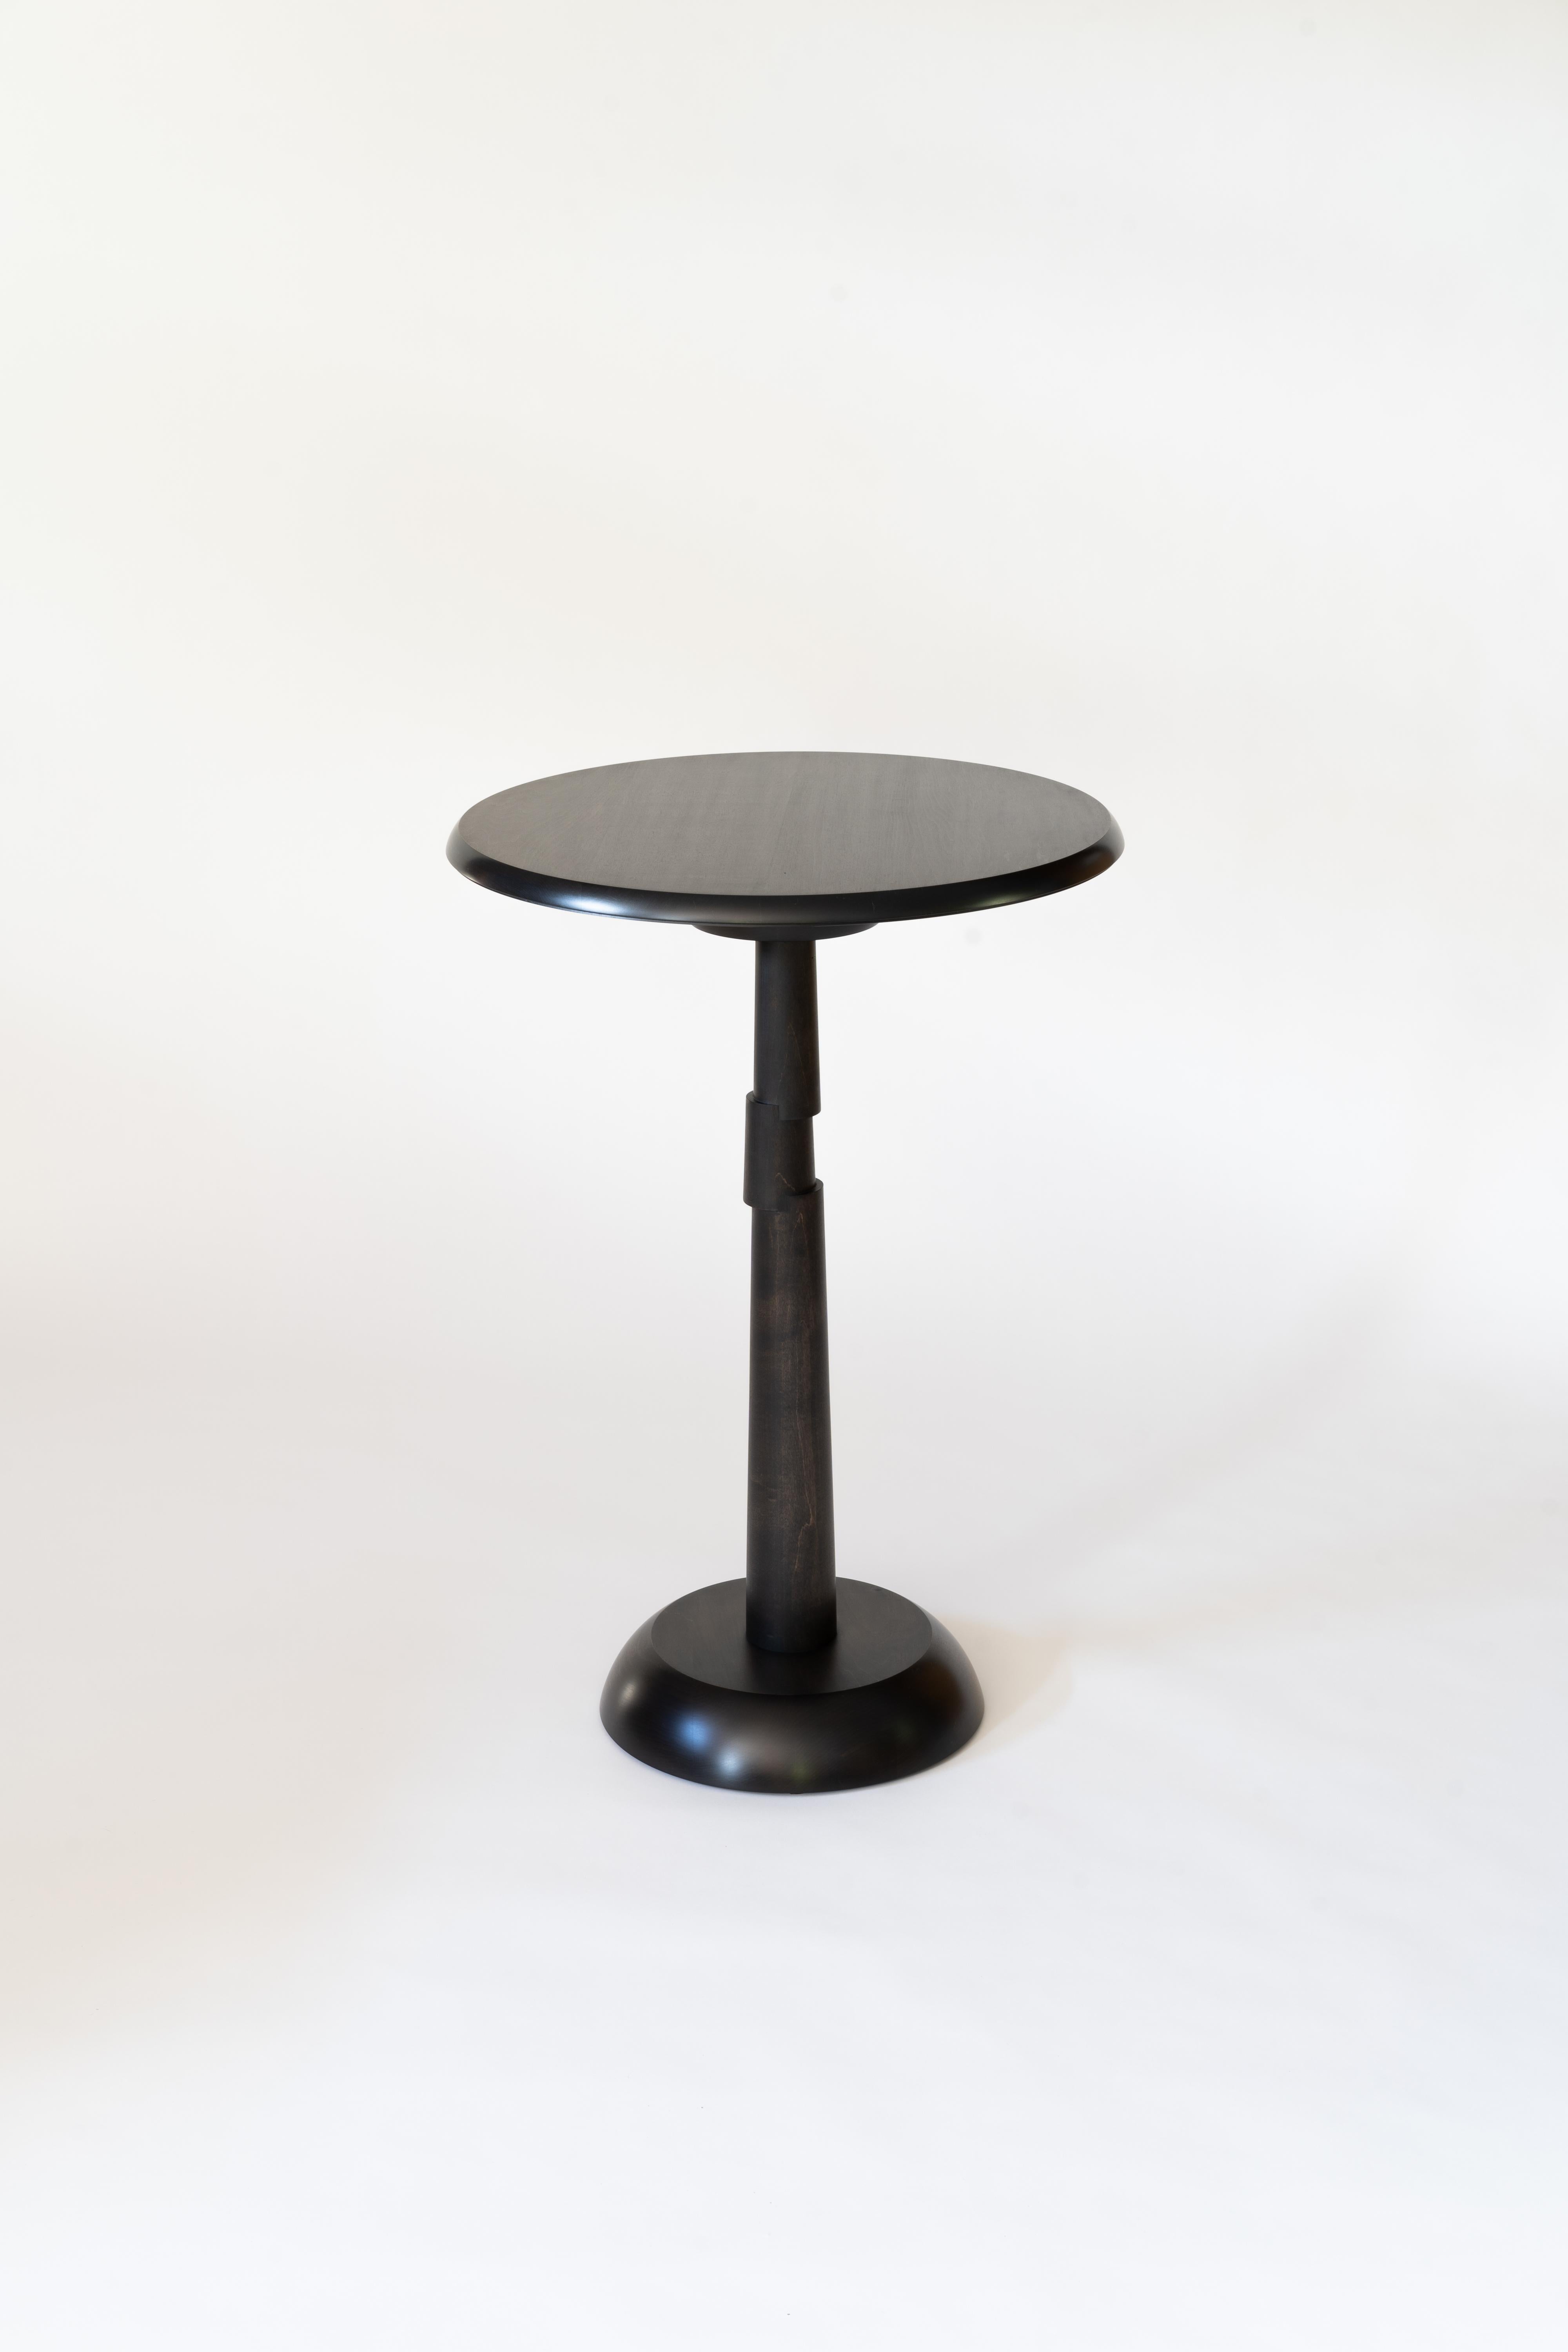 Turned Offset Pedestal Side Table For Sale